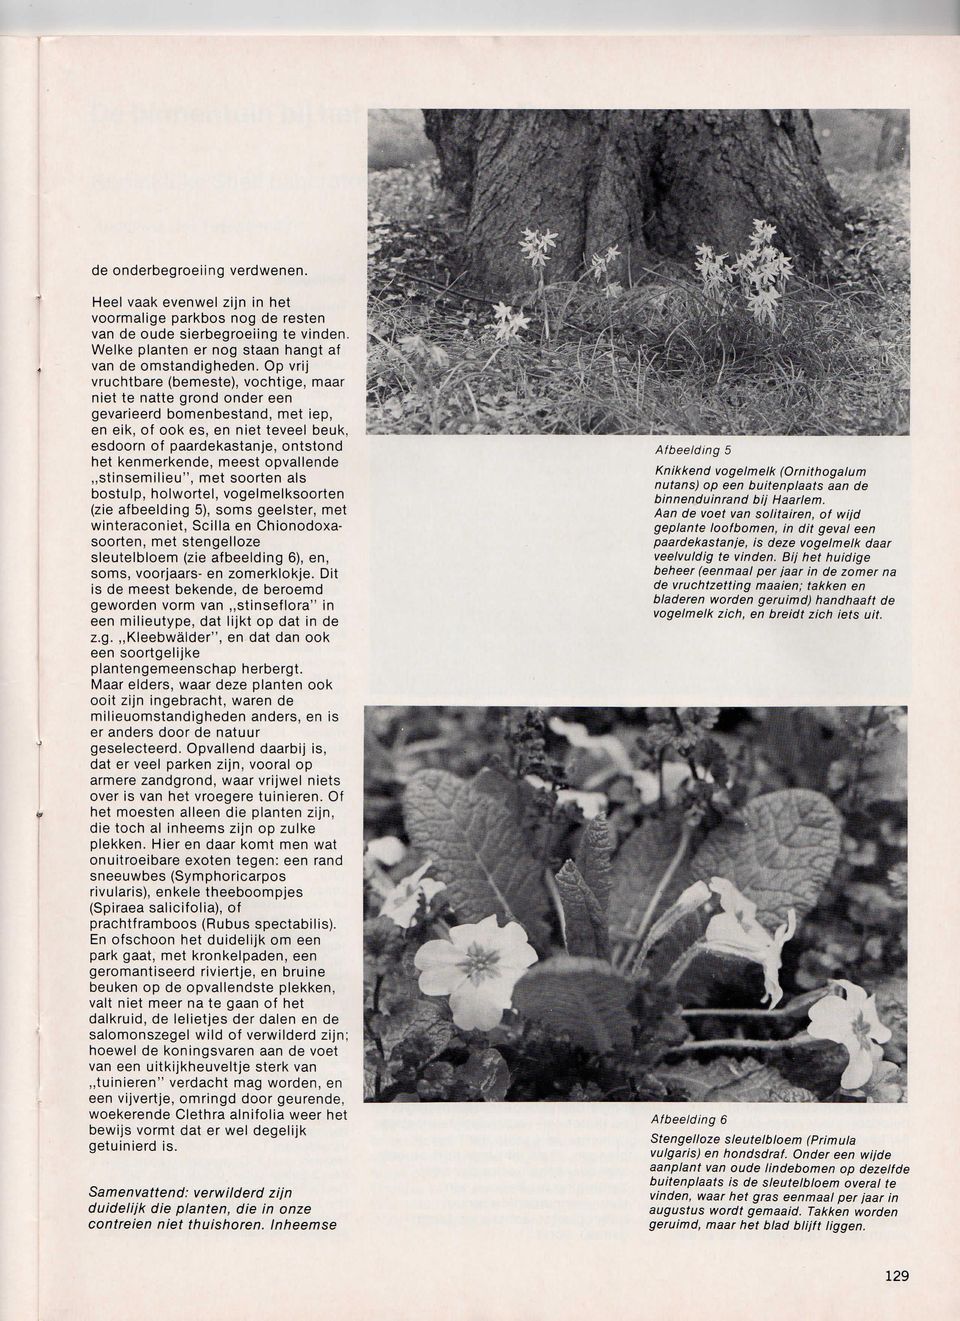 kenmerkende, meest opvallende stinsemilieu", met soorten als bostulp, holwortel, vogelmelksoorten (zie afbeelding 5), soms geelster, met winteraconiet, Scilla en Chionodoxasoorten, met stengelloze